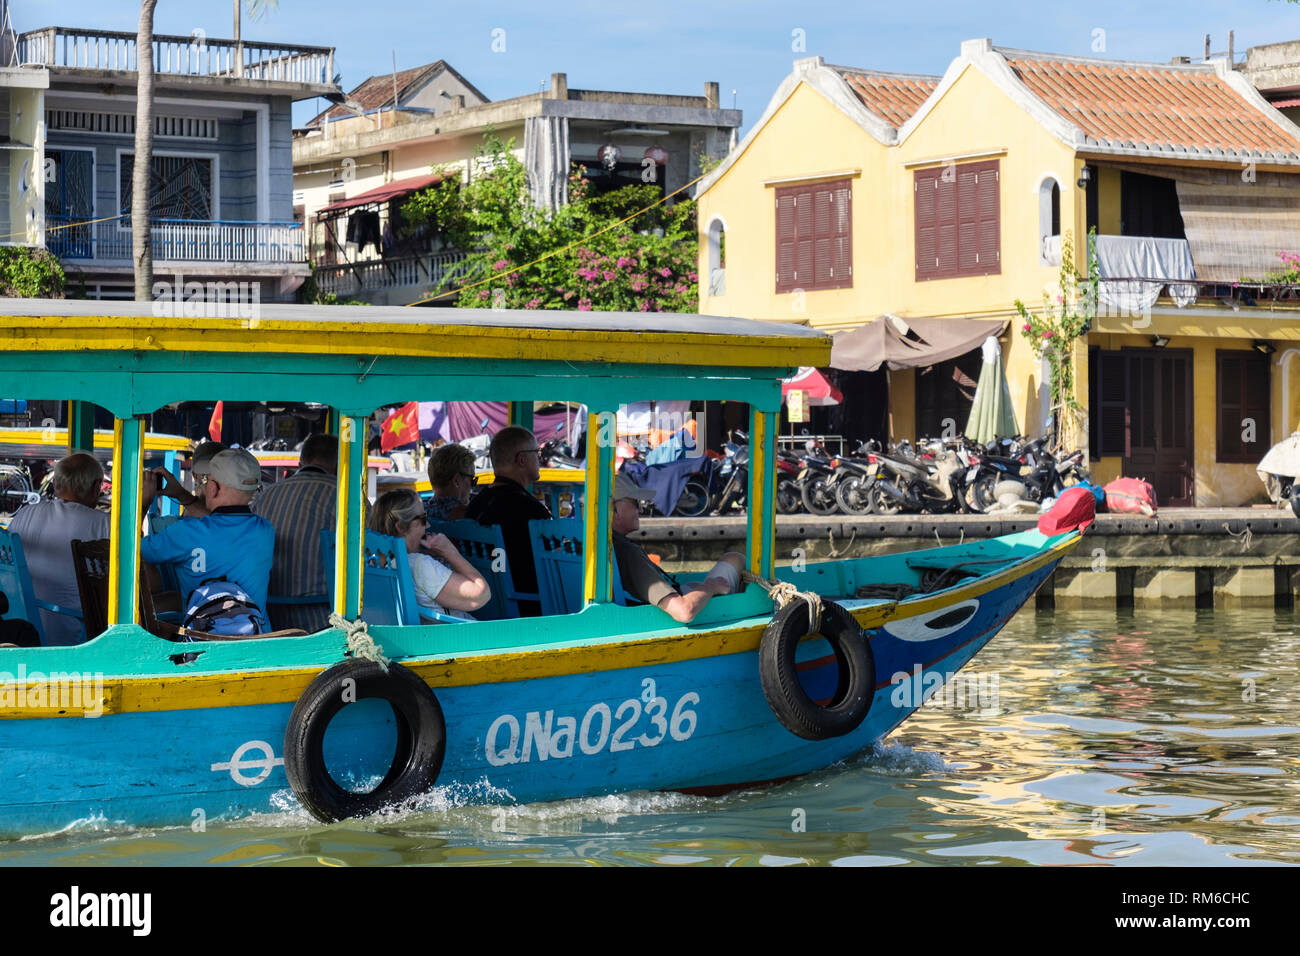 Les touristes à bord d'un bateau naviguant sur la rivière Thu Bon tour. Hoi An, Quảng Nam Province, Vietnam, Asie Banque D'Images